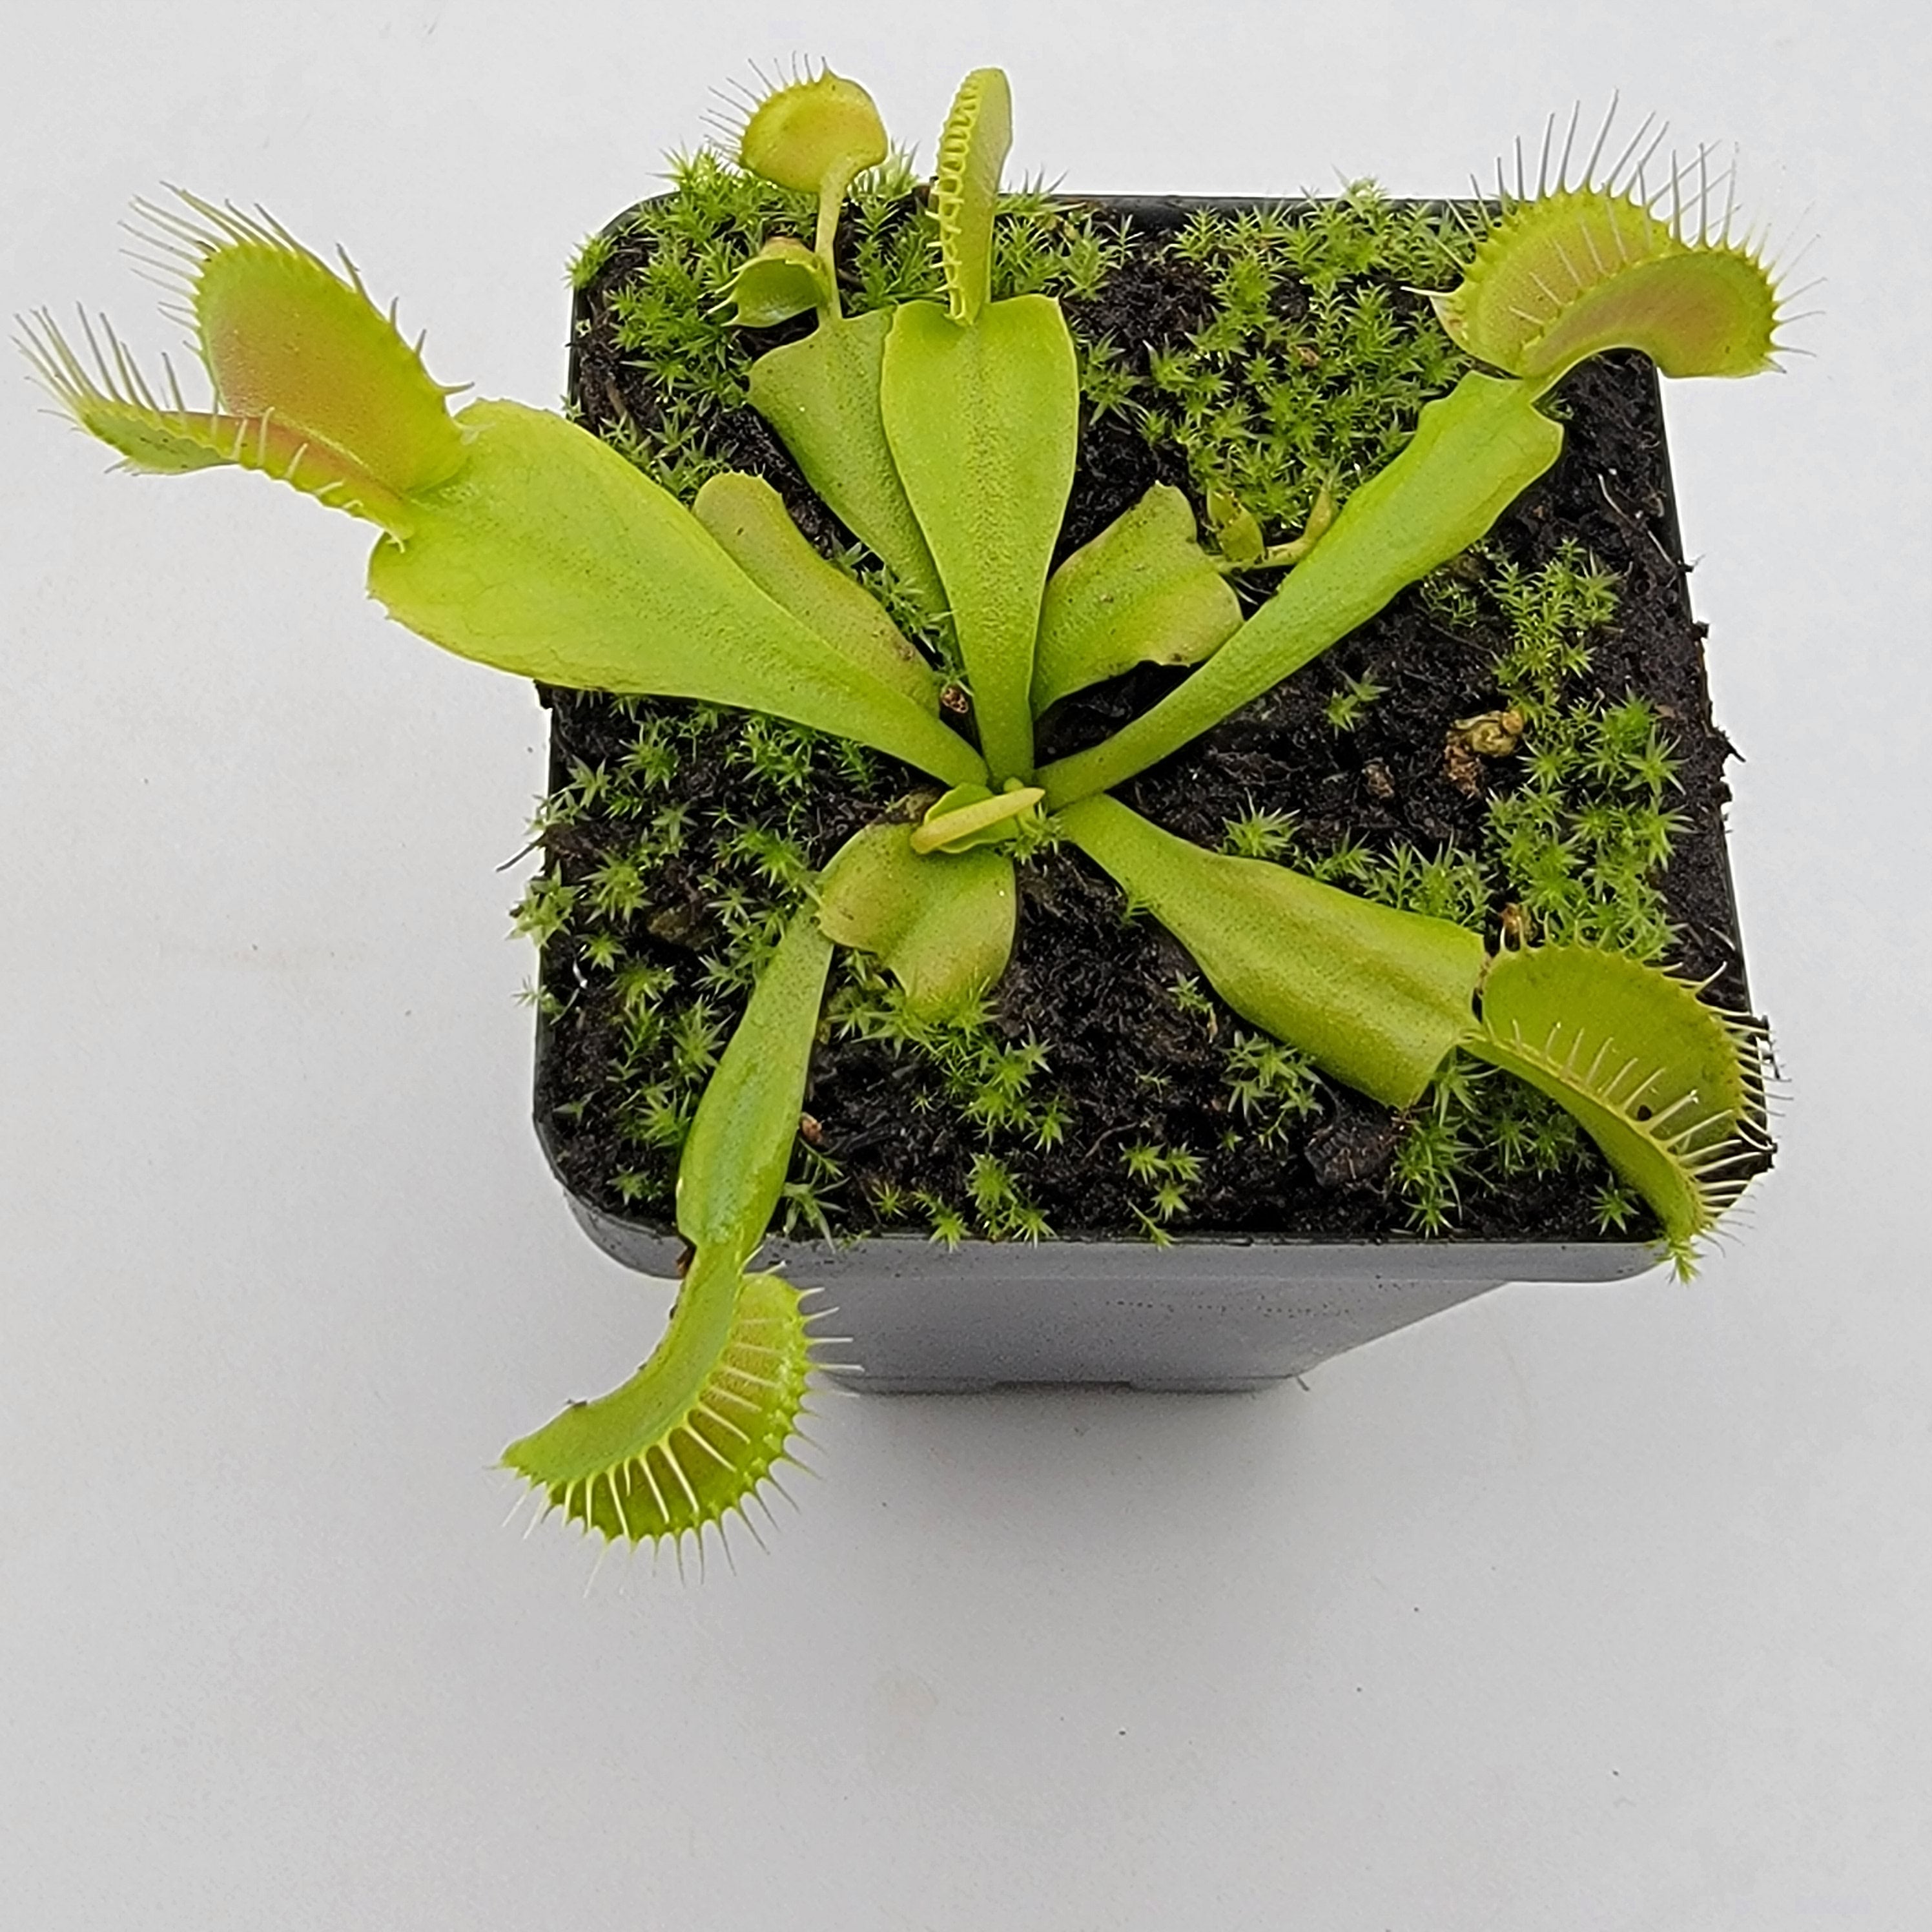 Venus flytrap (Dionaea muscipula) 'Double Trouble' - Rainbow Carnivorous Plants LLC